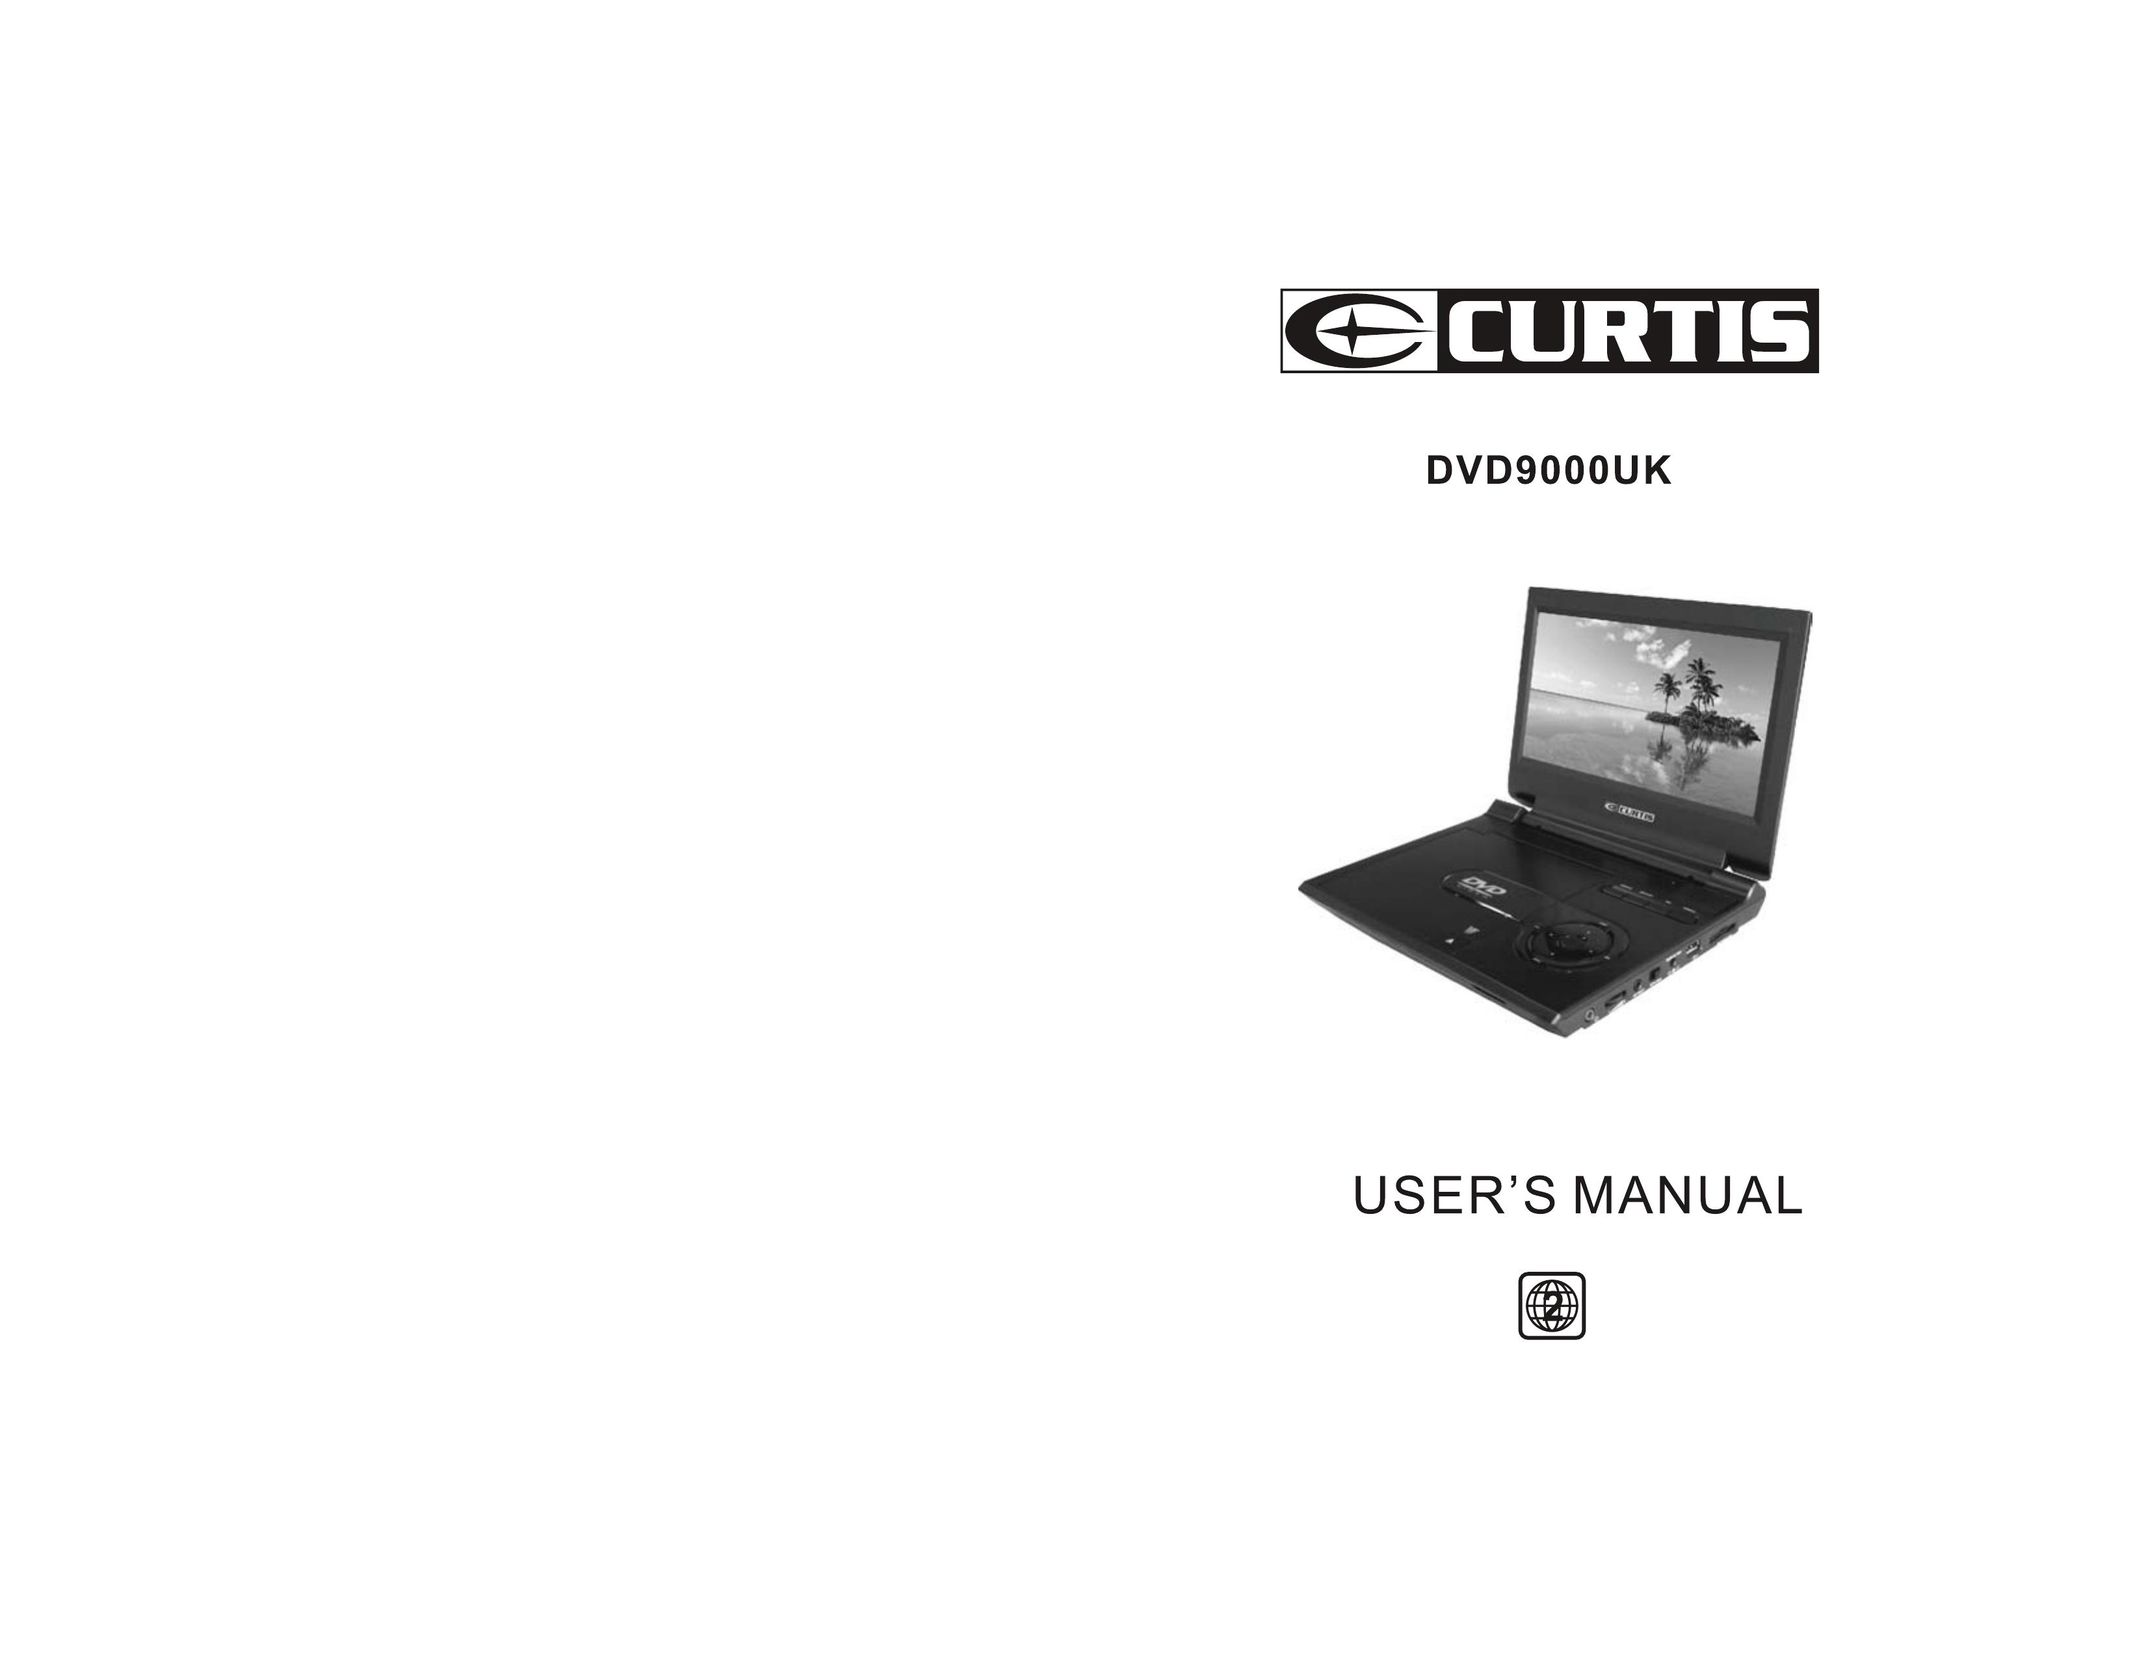 Curtis DVD9000UK Portable DVD Player User Manual